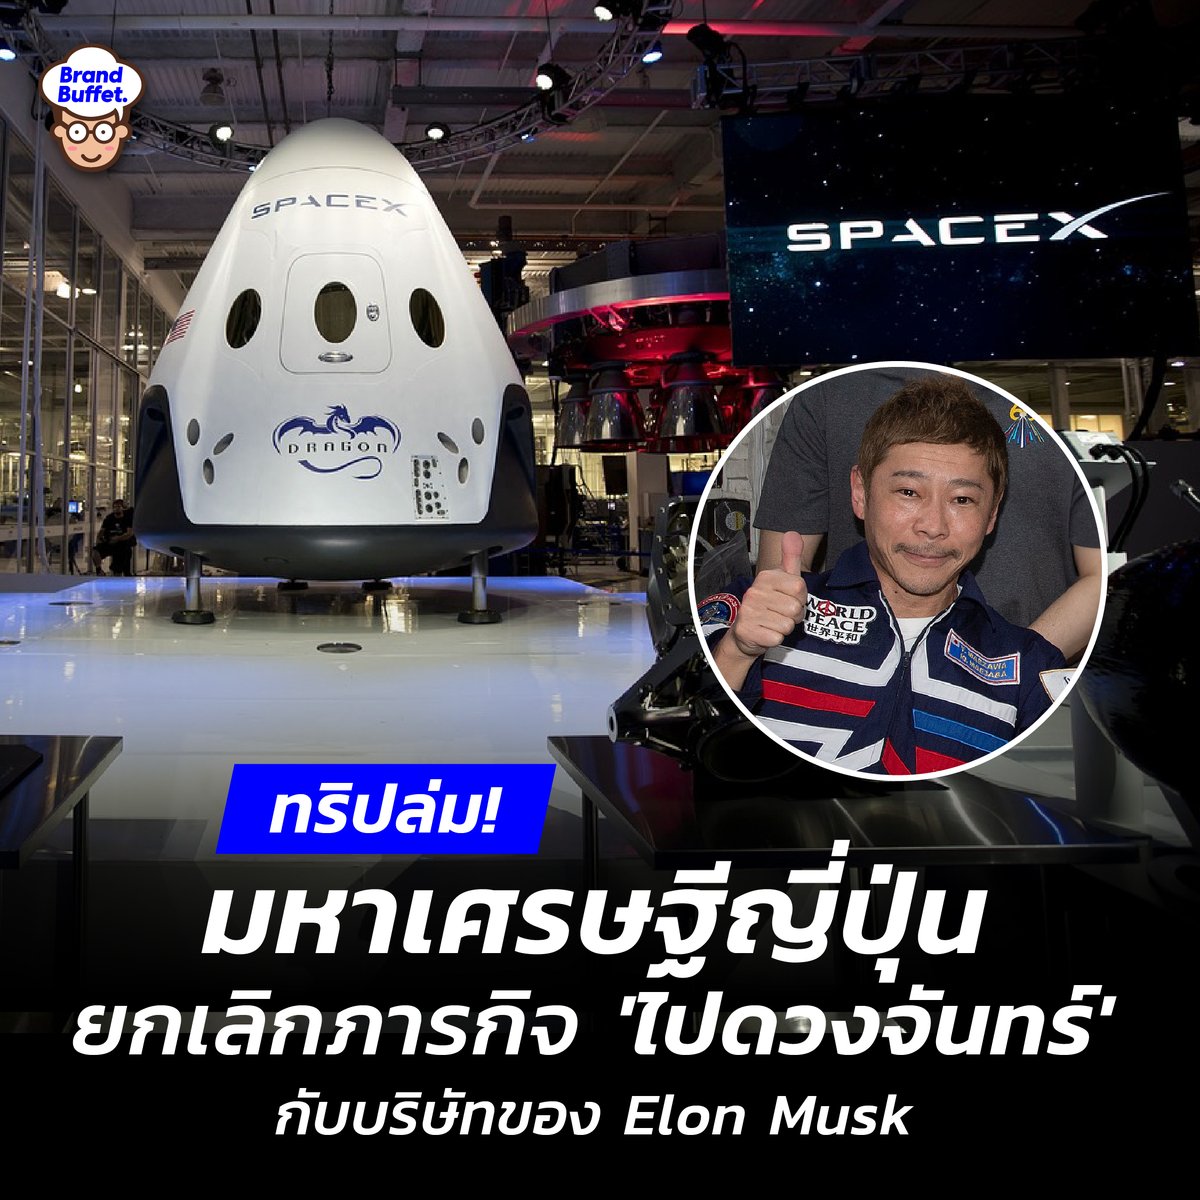 ไปไม่ถึงดวงจันทร์! มหาเศรษฐีญี่ปุ่นยกเลิกภารกิจ DearMoon เหตุโครงการ “ไม่มีความแน่นอน” #SpaceX #DearMoon #ElonMusk #BrandBuffet brandbuffet.in.th/2024/06/japane…